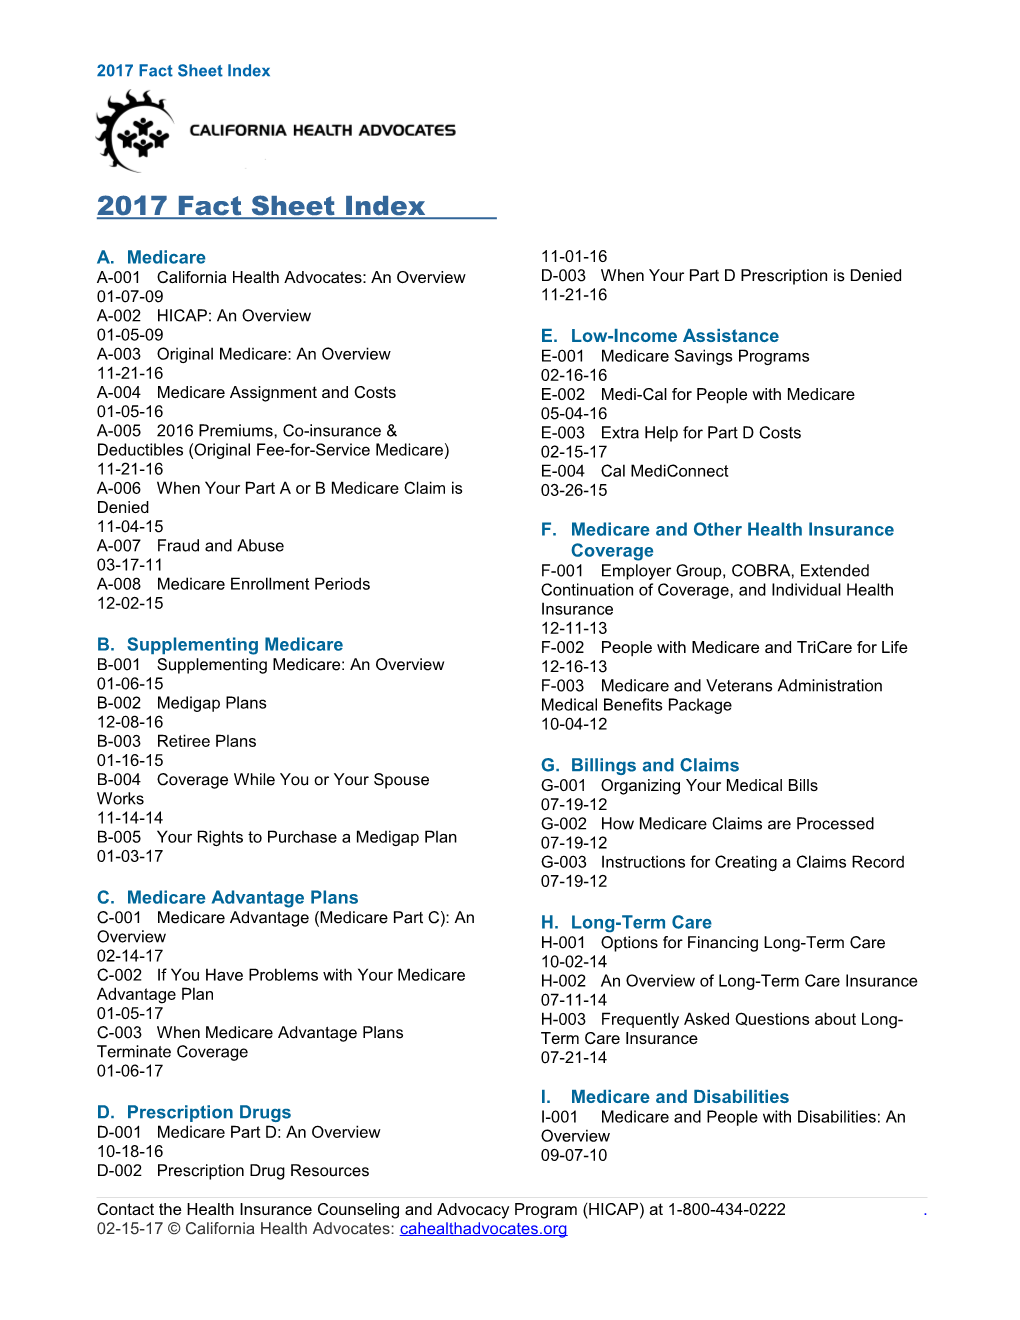 2008 Fact Sheet Index